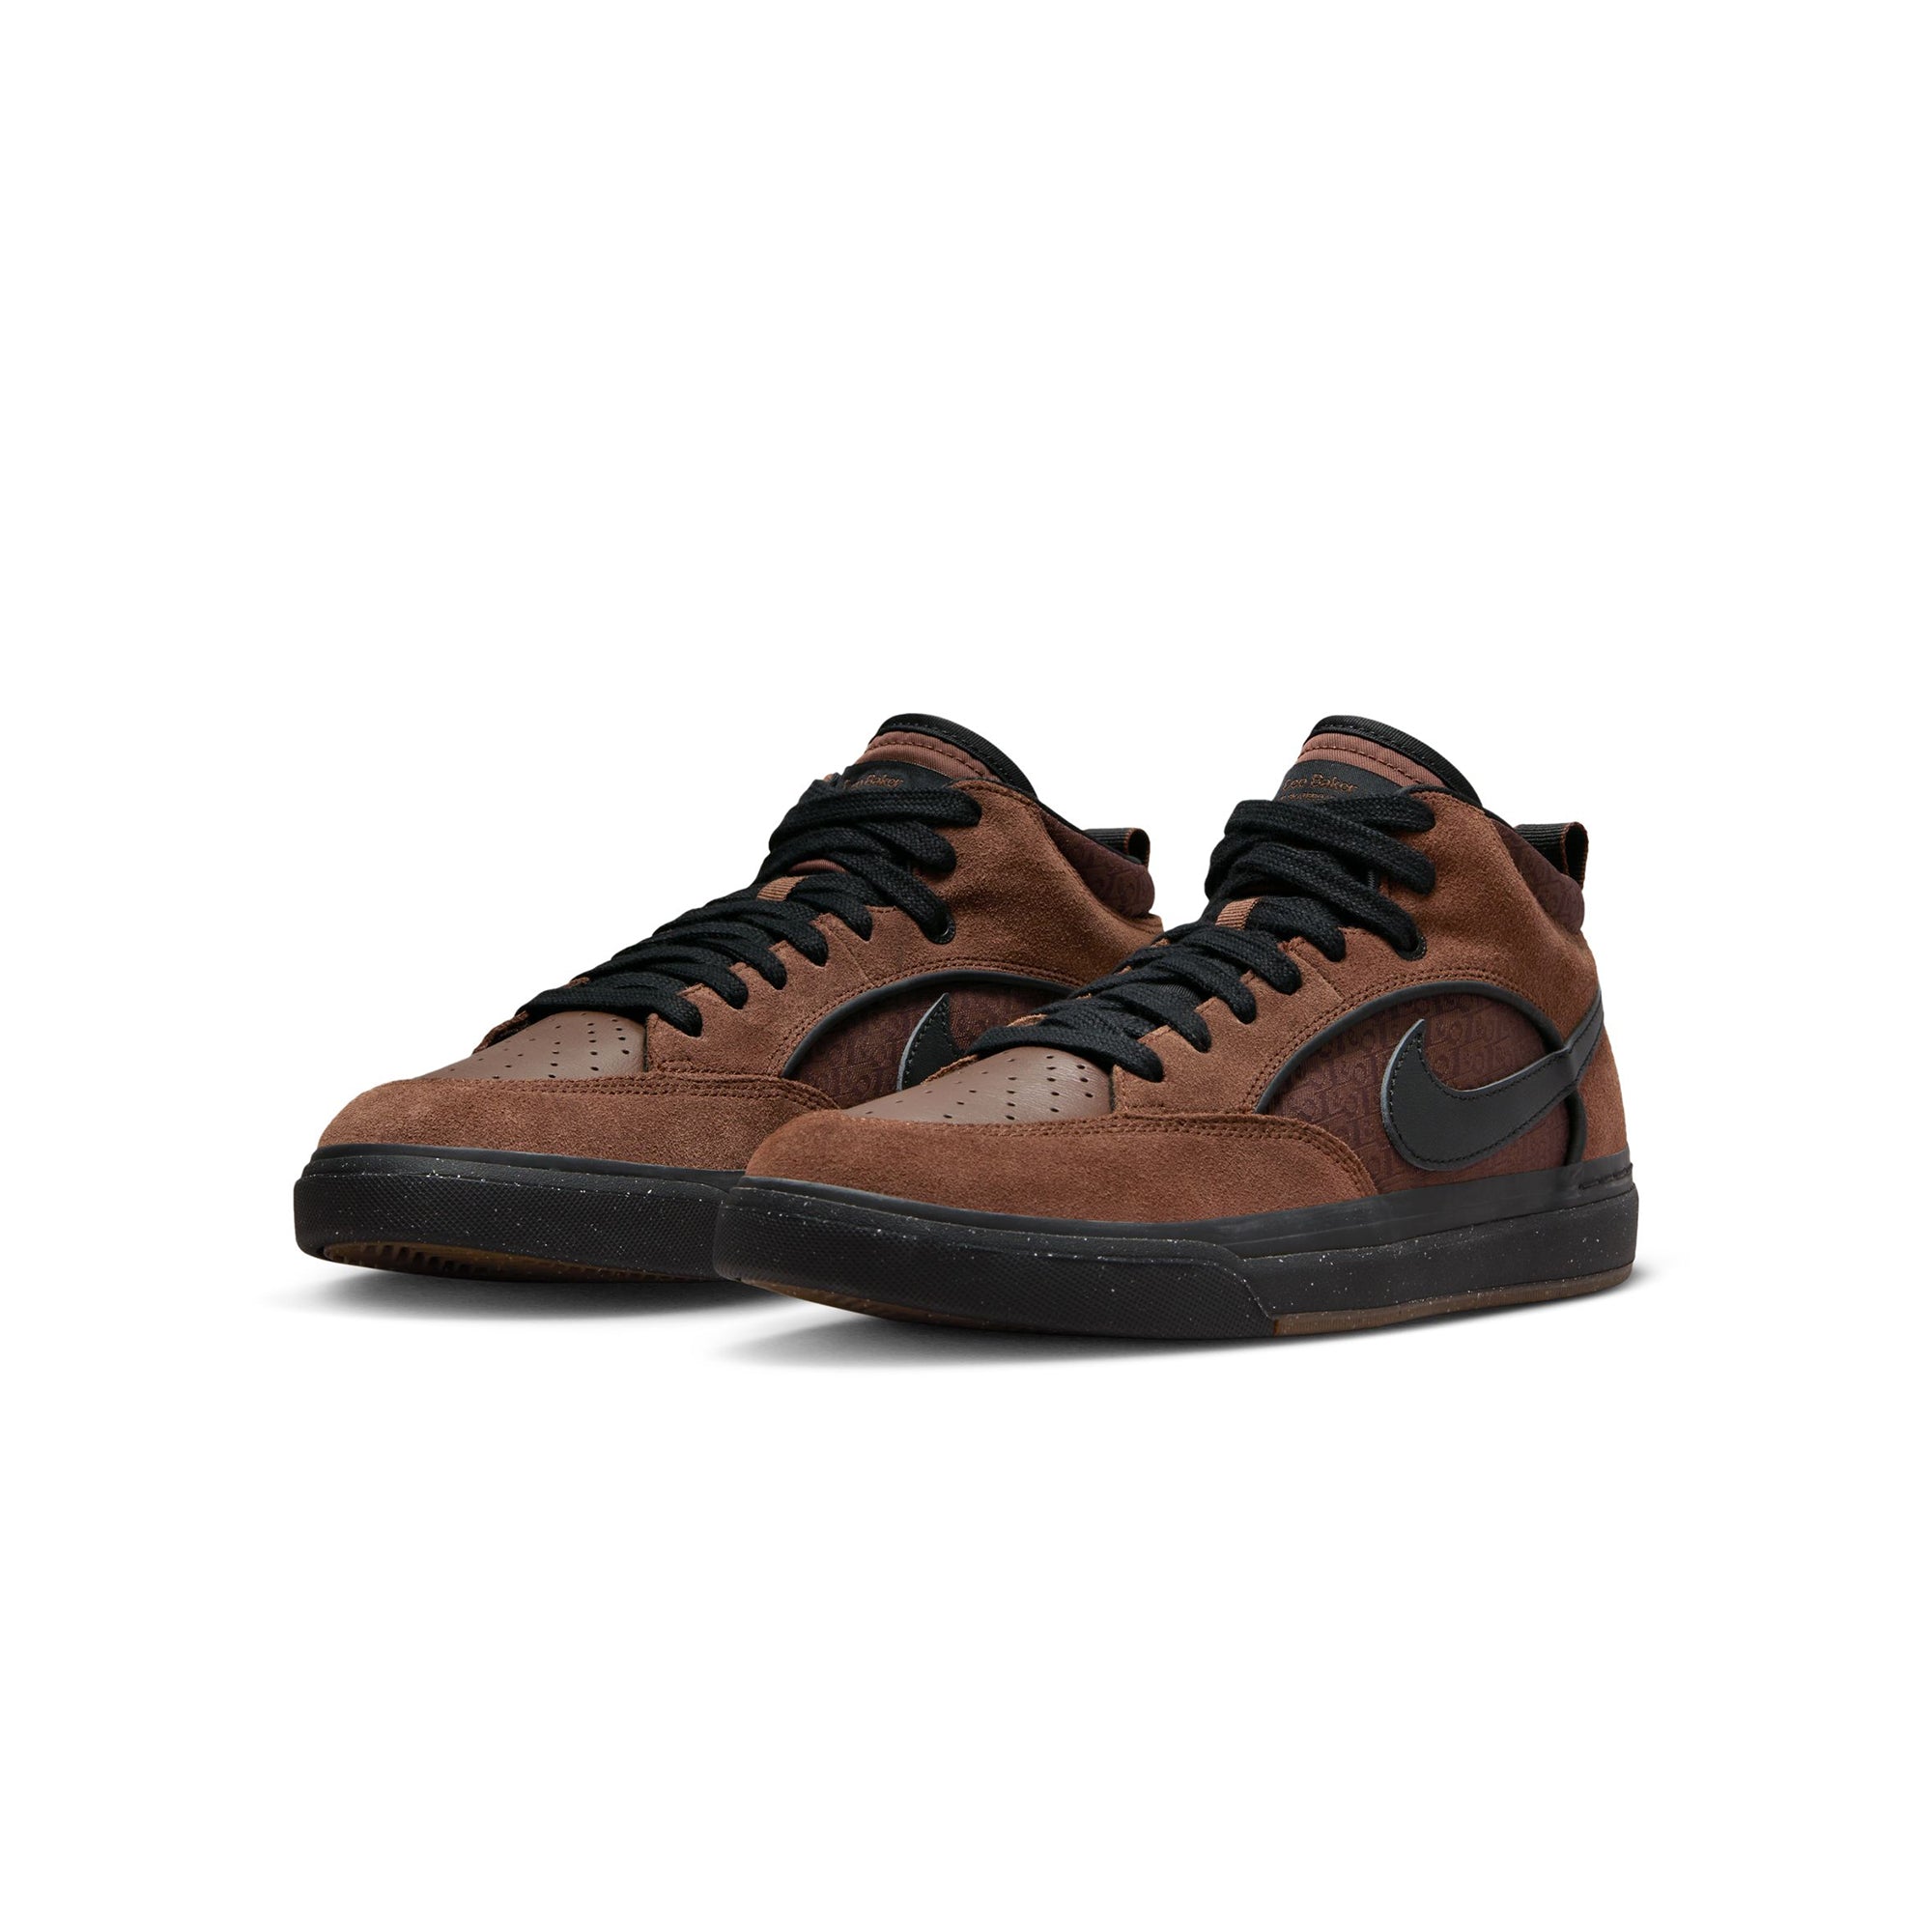 Brooklyn Low Top Sneakers (Vintage Brown) UK 6/ EUR 40 / Leather / Brown